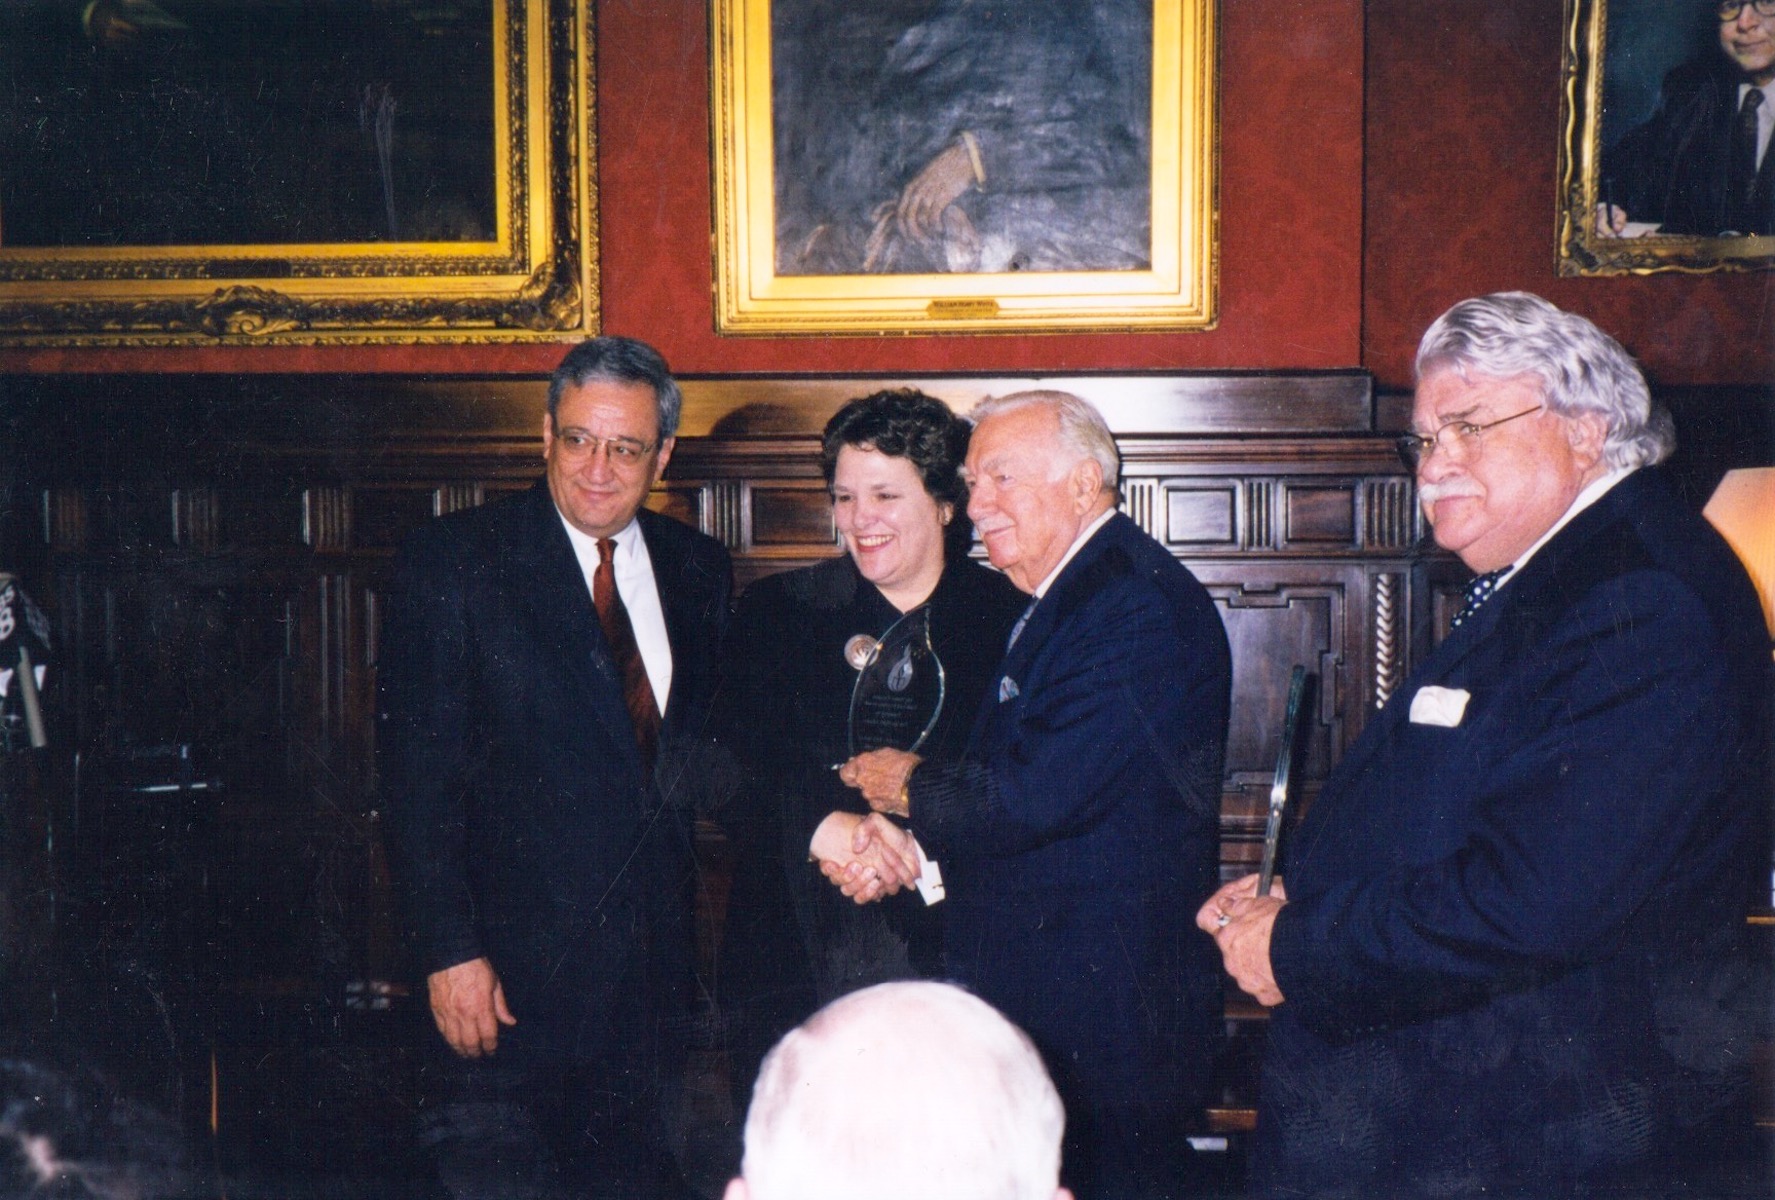 Donna receiving the Walter Cronkite “Faith & Freedom” Award, 1999, New York City, NY.